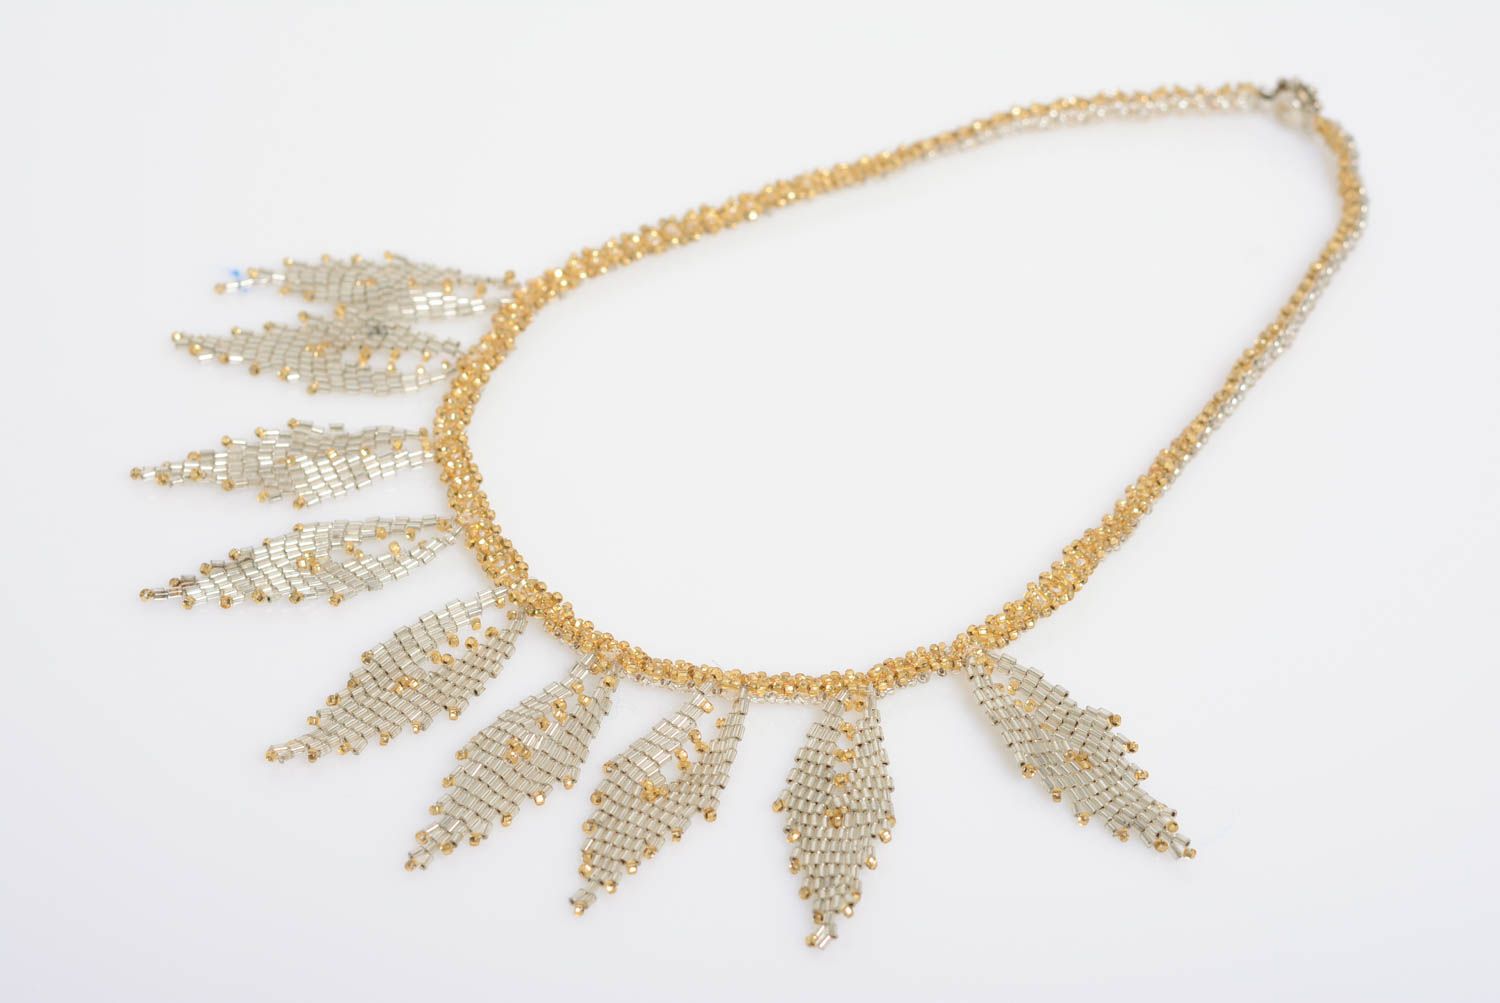 Ожерелье из бисера золотистого цвета нежное красивое ручной работы плетеное фото 1